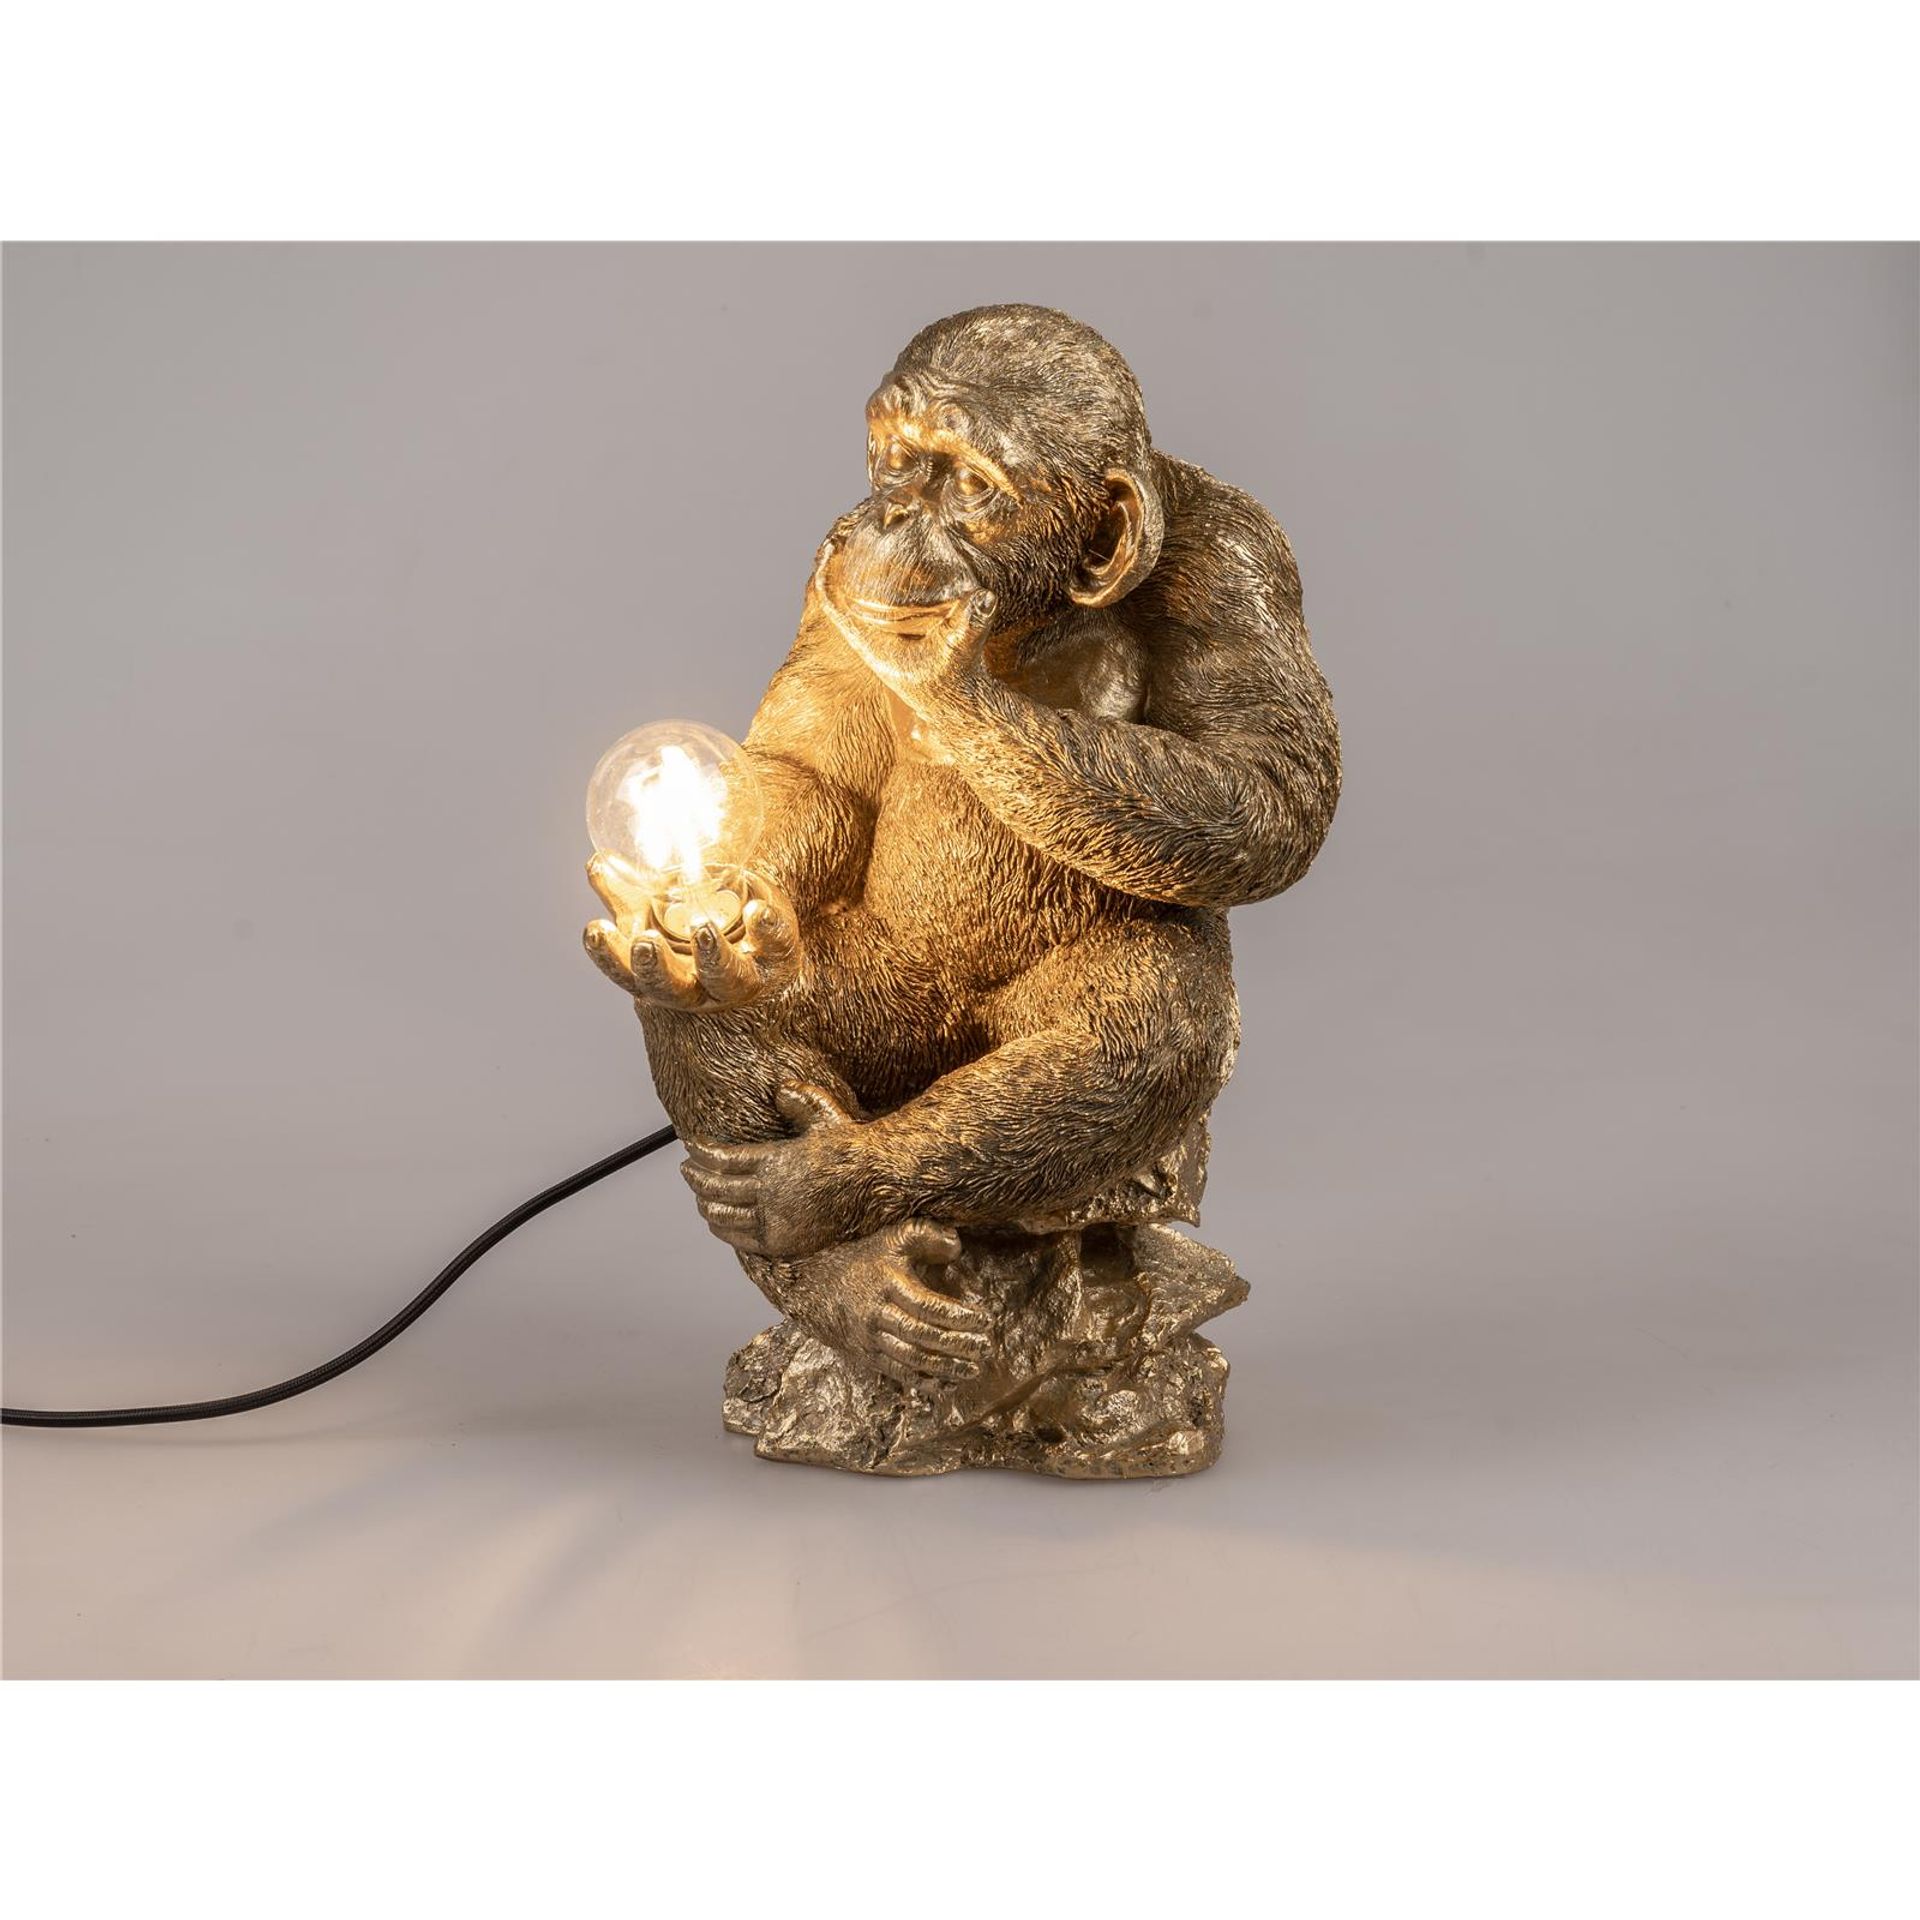 Stimmungslampe in Form eines goldenen Affen 25x41cm aus Kunststein gefertigt